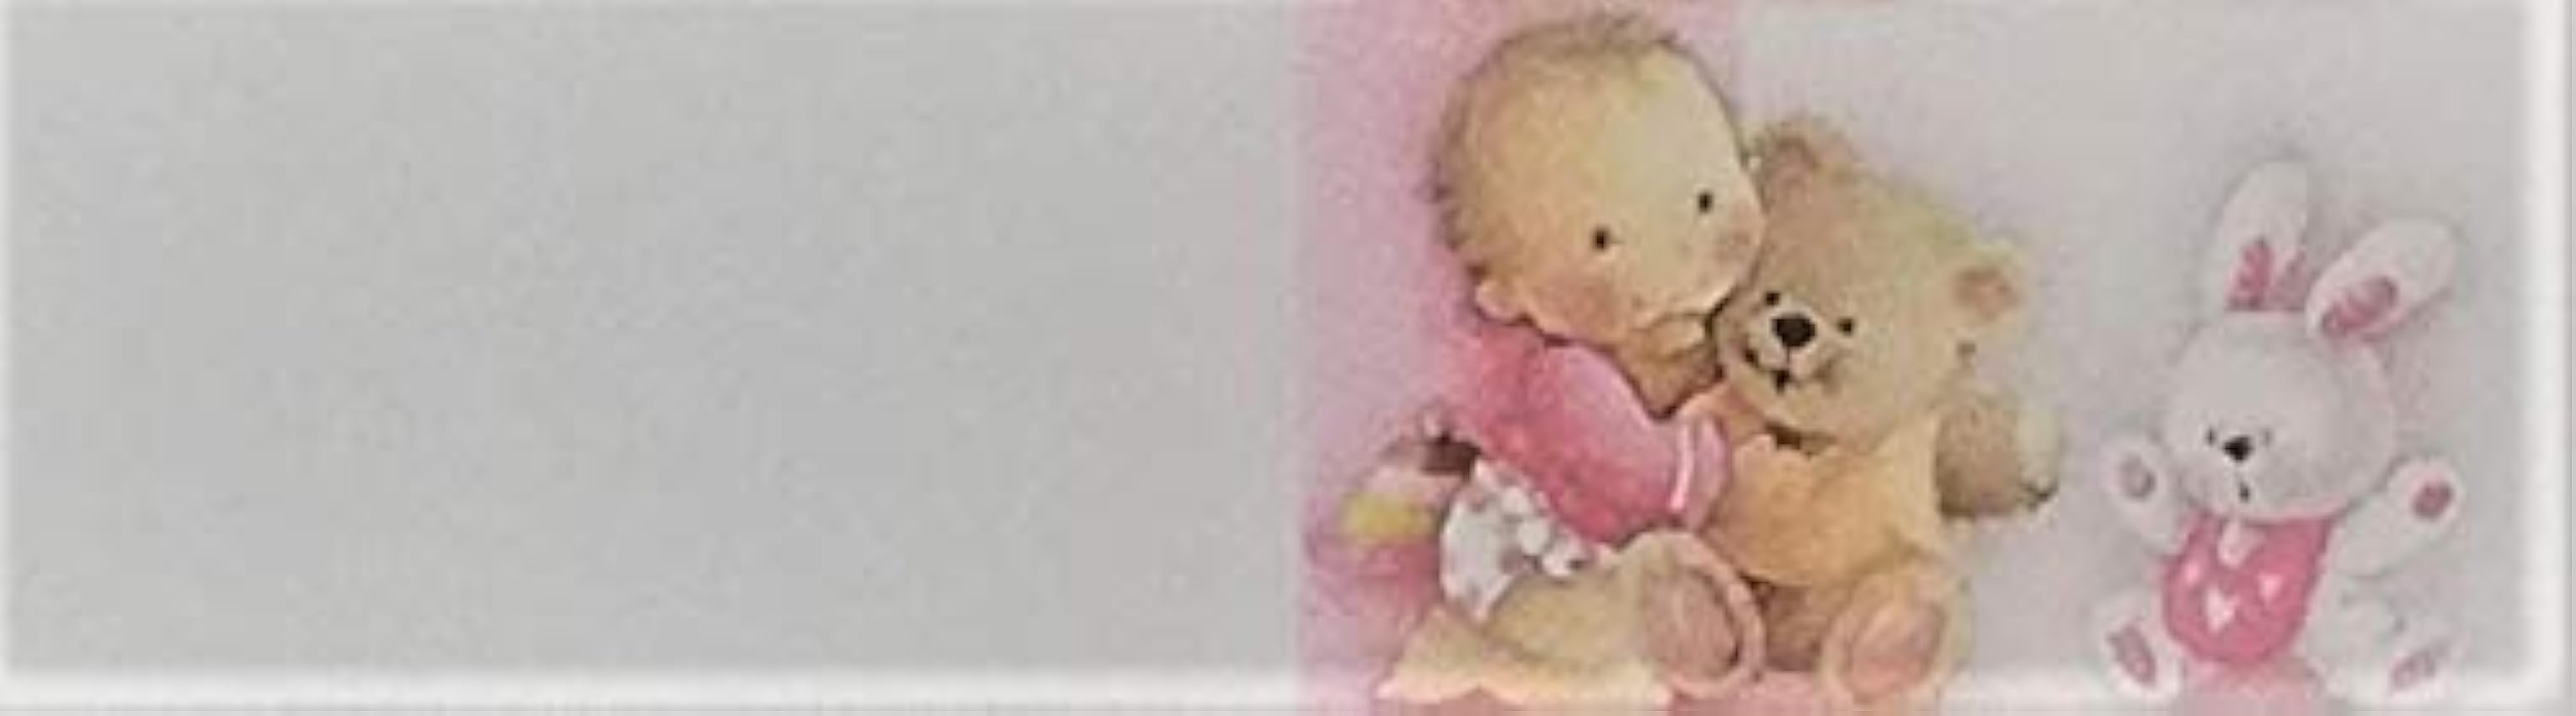 Cartotecnica Italiana - 100 tarjetas de recuerdo para nacimiento, femenino, encastrado en formato A4 i97iEb0g